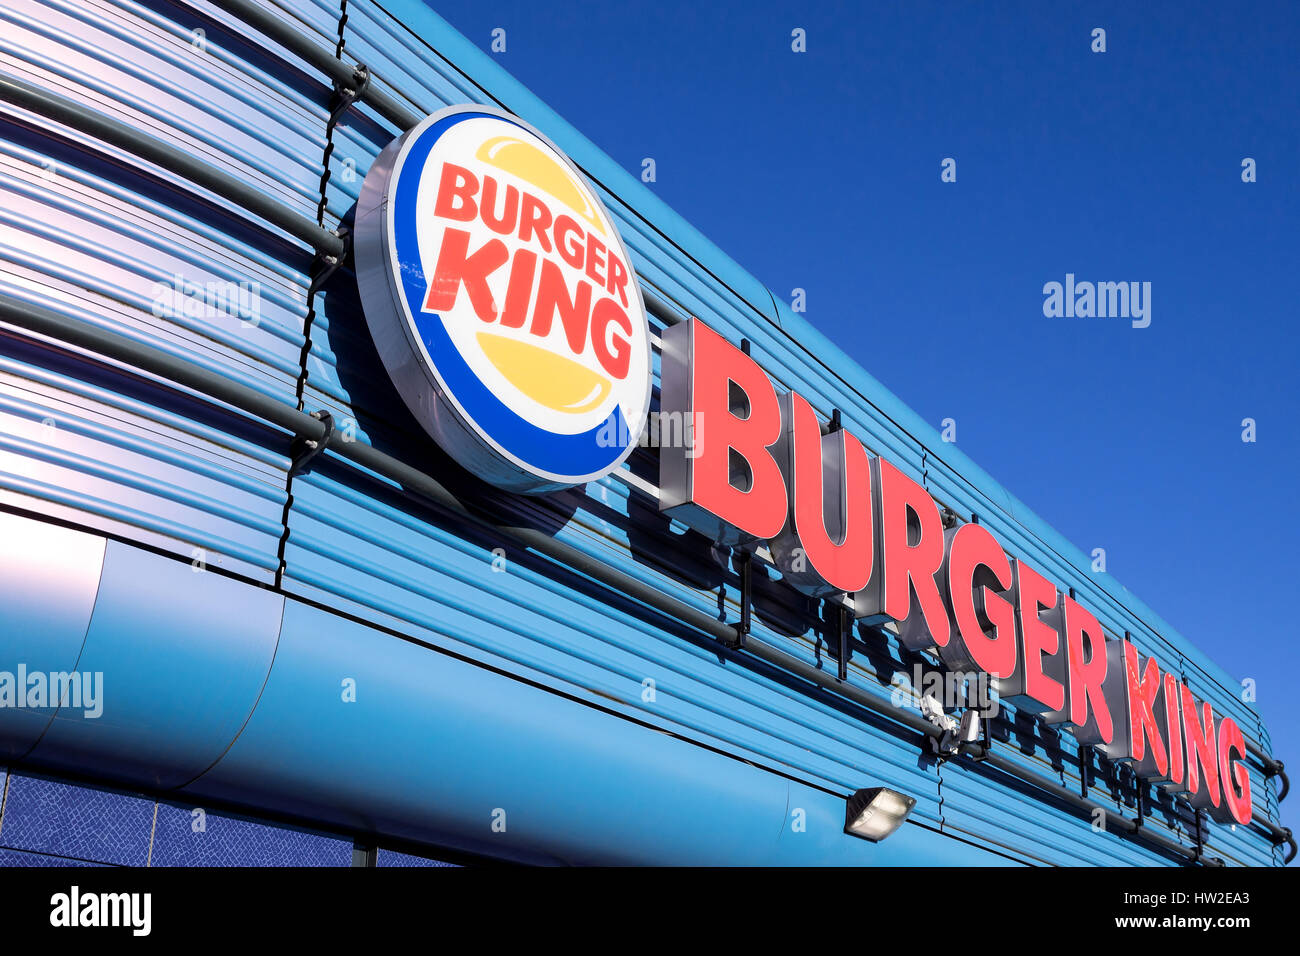 Burger King Schnellrestaurant.  Burger King ist die zweite größte Kette von Hamburger Fastfood-Restaurants in Bezug auf die weltweiten Standorte. Stockfoto